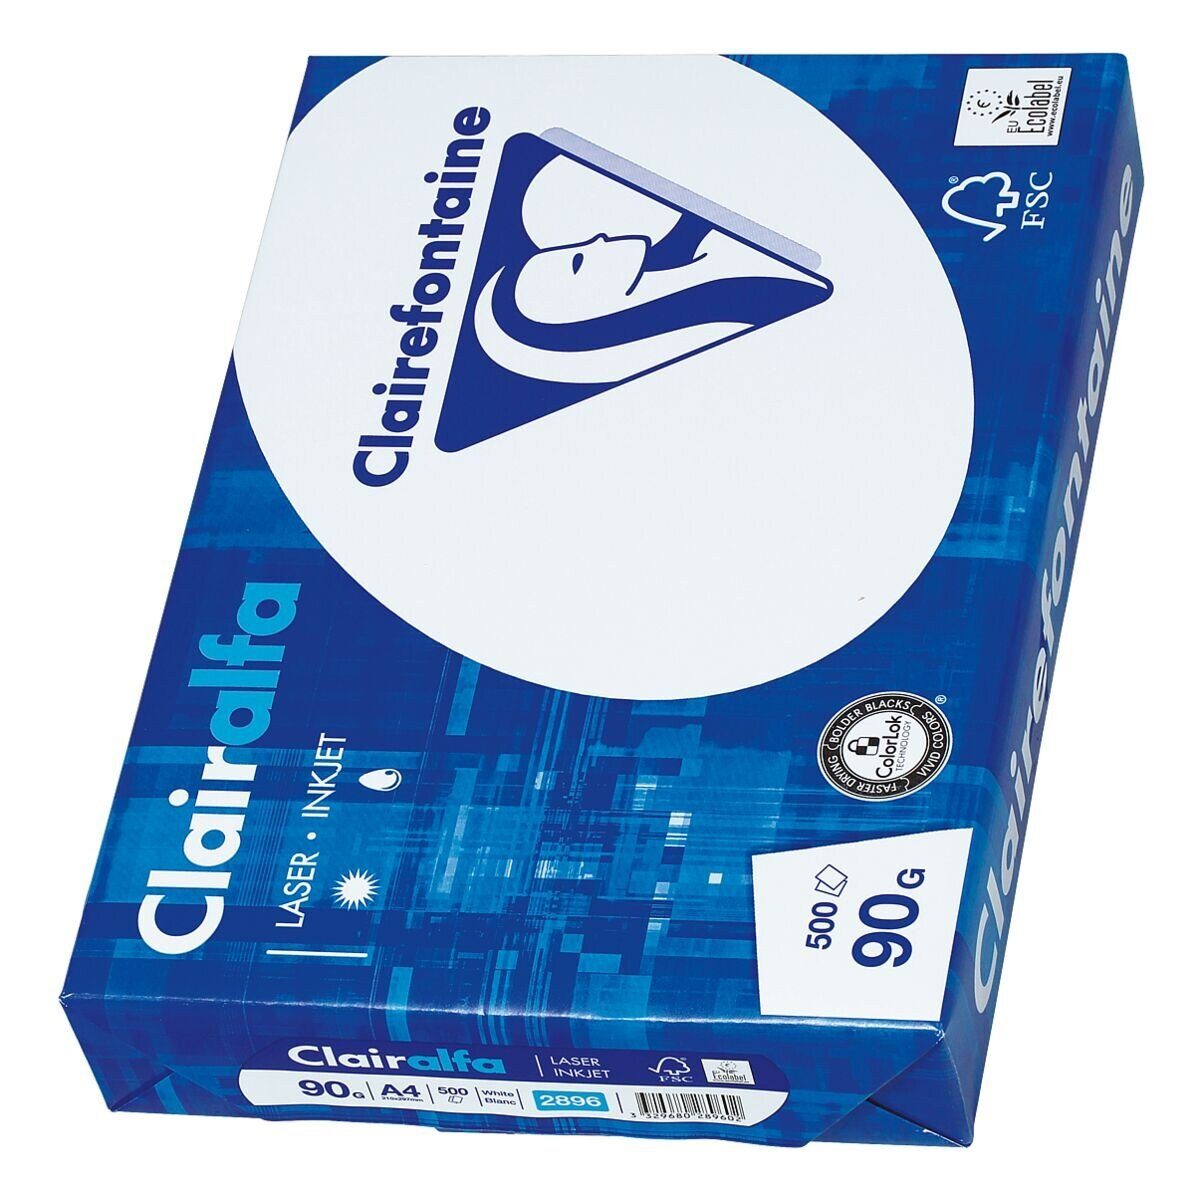 CLAIREFONTAINE Druckerpapier Clairalfa 2896, Format DIN A4, 90 g/m², 172 CIE, 500 Blatt